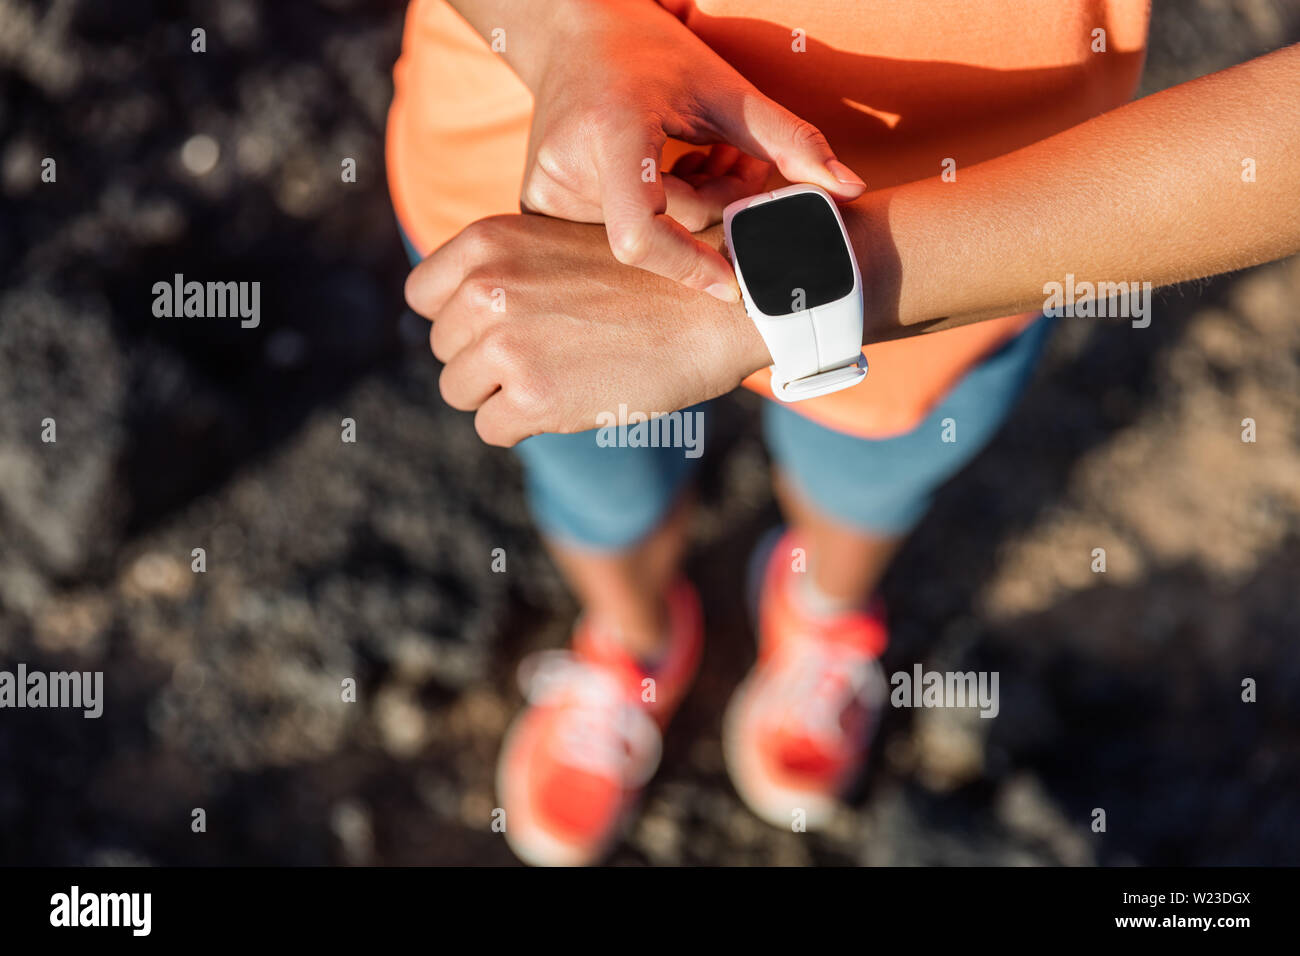 Trail Runner Athlet mit Ihrem smart Watch App fitness Fortschritt oder Herzfrequenz während Run cardio Workout zu überwachen. Frau Training im Freien auf Felsen. Nahaufnahme von Tech Gear. Stockfoto